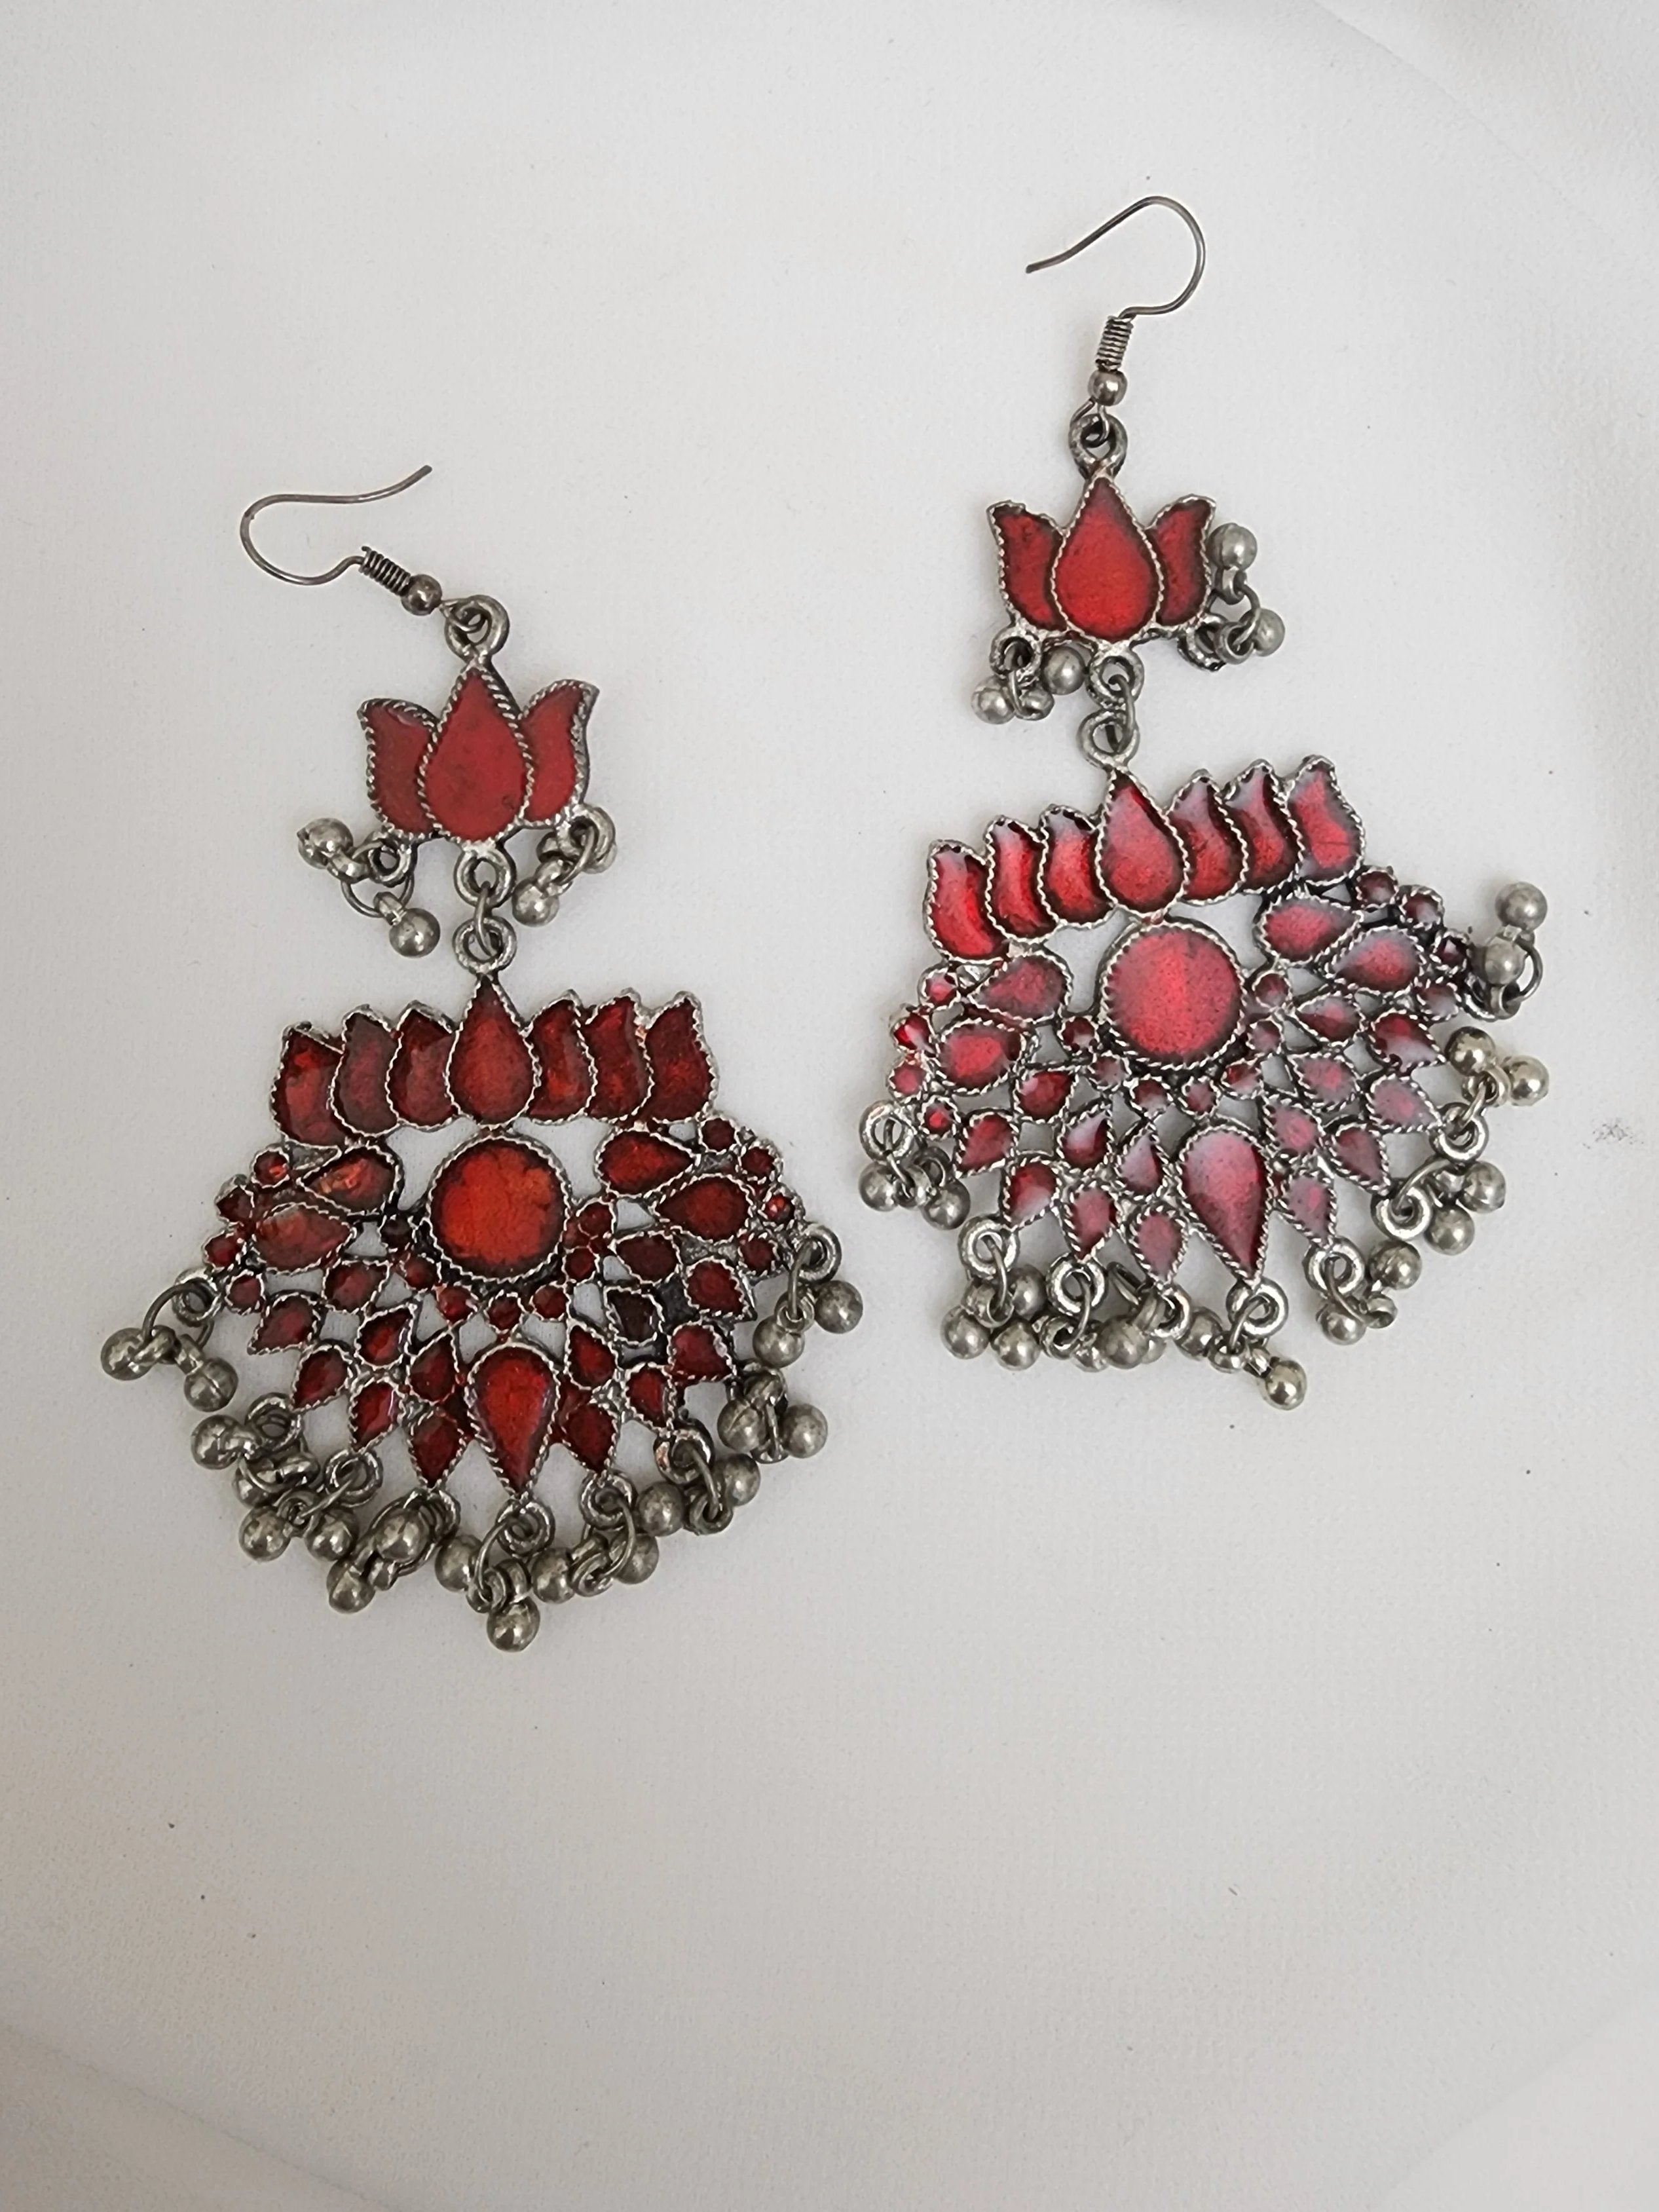 Afghani enamel painted earrings